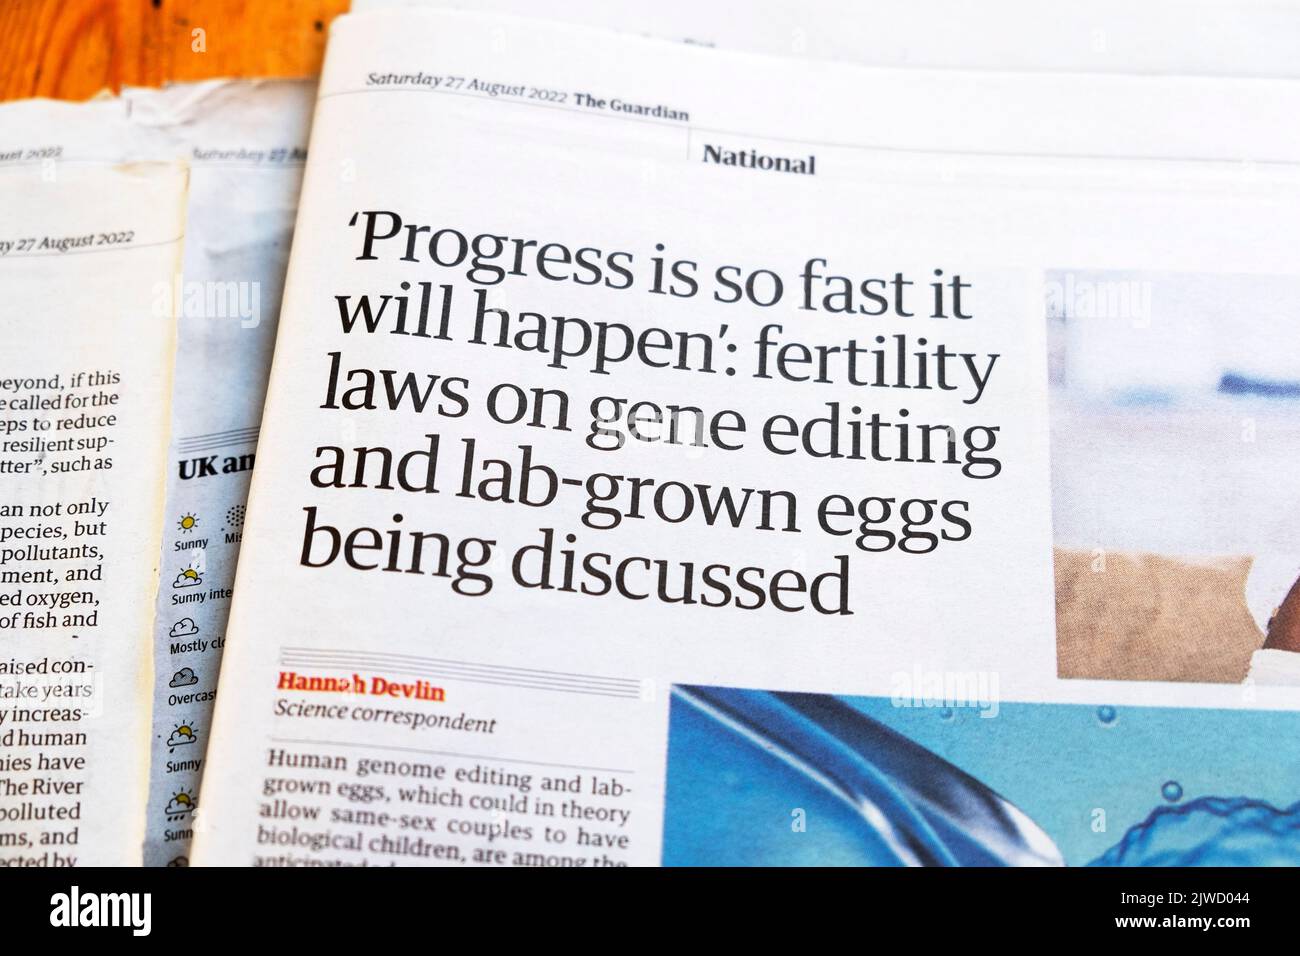 'El progreso es tan rápido que sucederá: Leyes de fertilidad sobre la edición de genes y huevos cultivados en laboratorio' El periódico Guardian artículo titular 27 de agosto de 2022 Londres Reino Unido Foto de stock